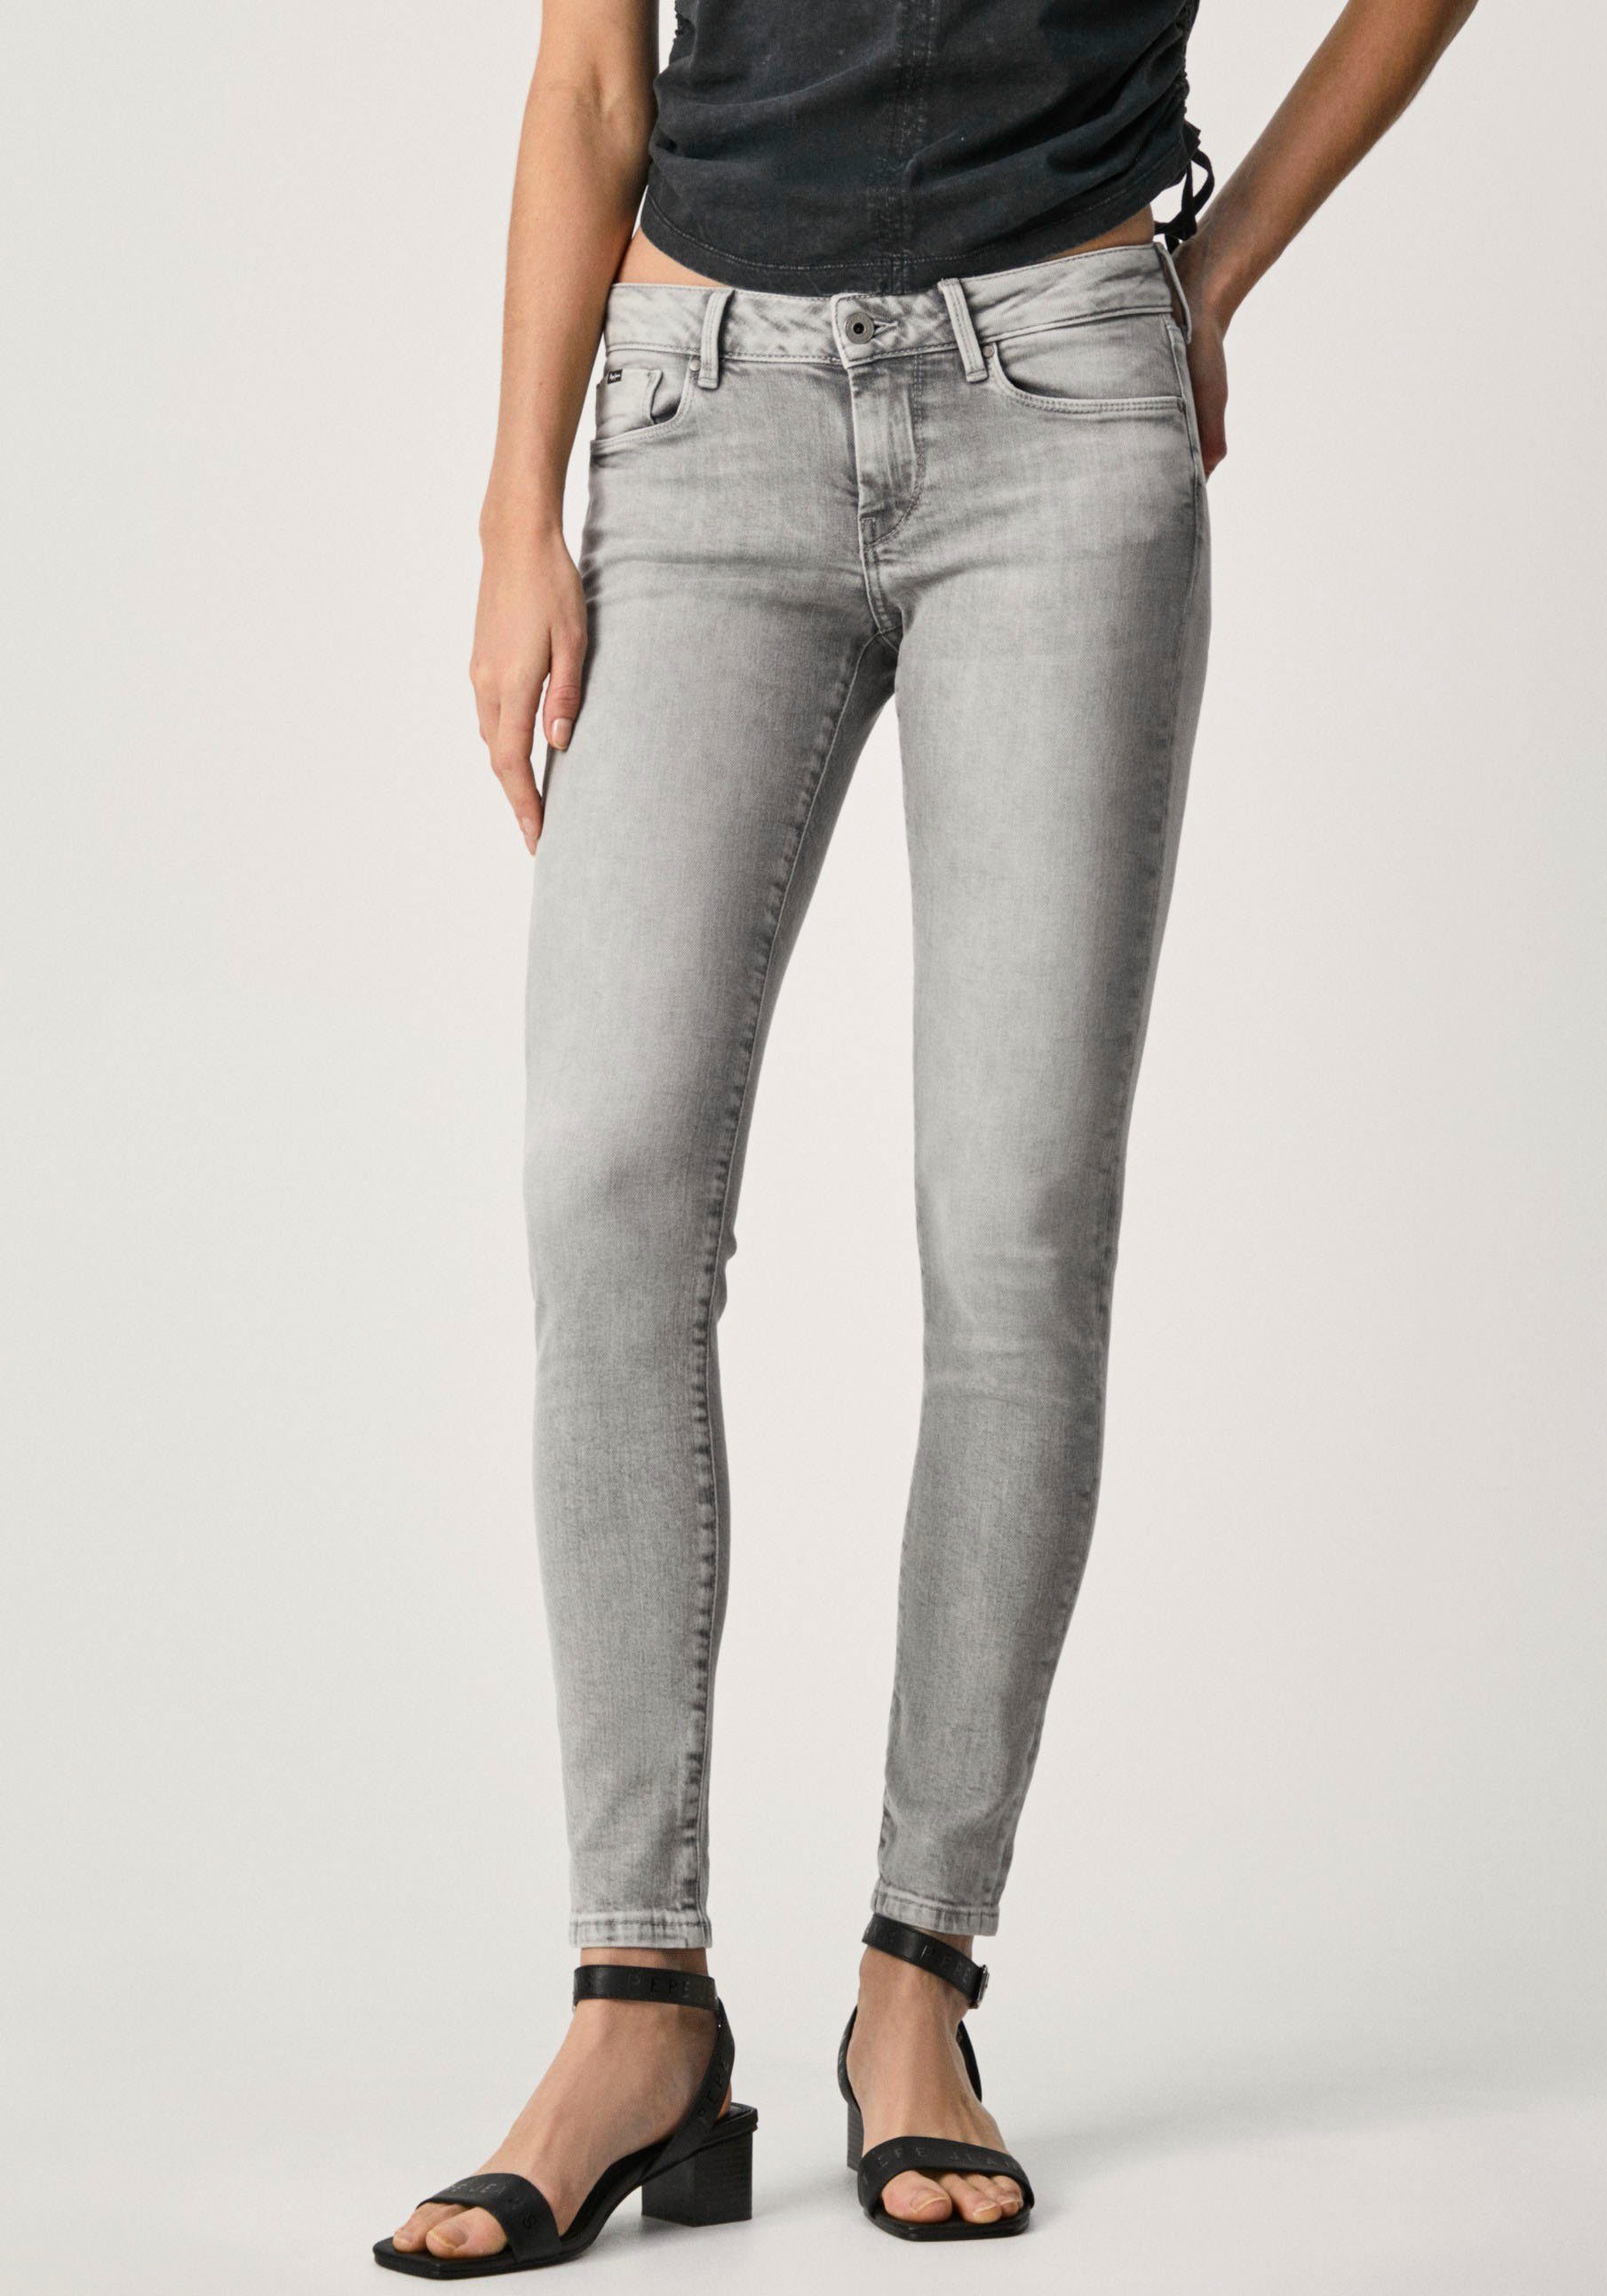 Graue Jeans online kaufen | OTTO